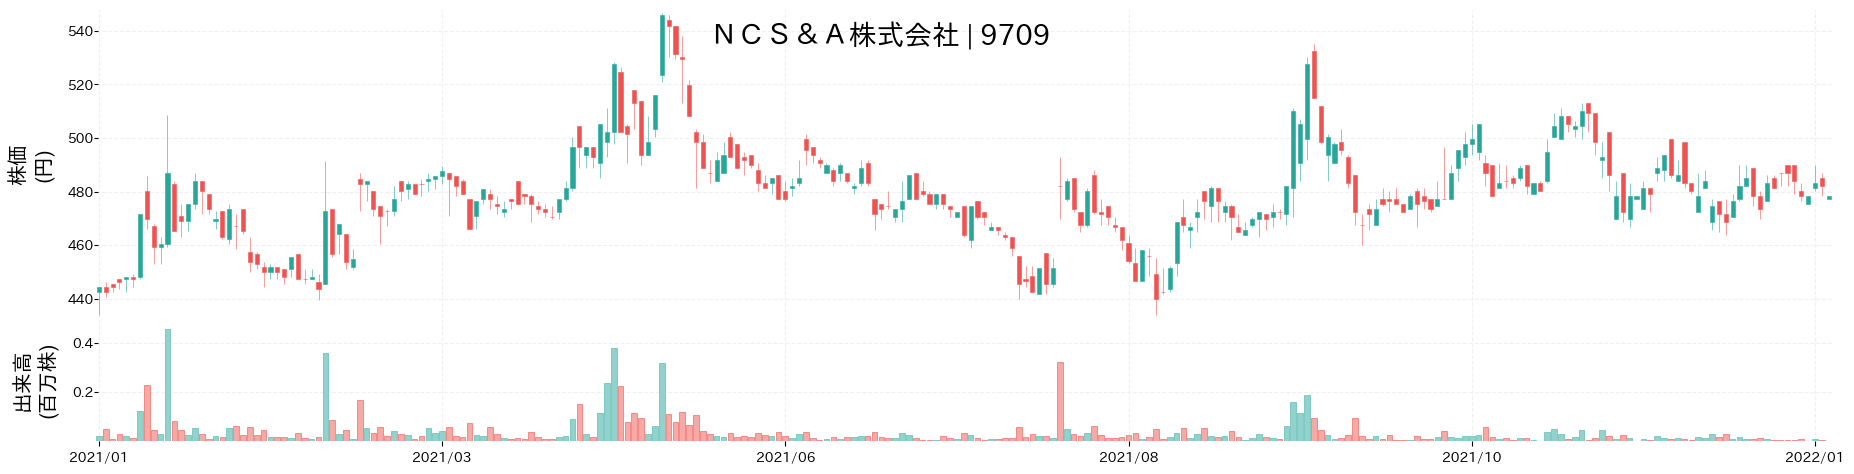 NCS&Aの株価推移(2021)